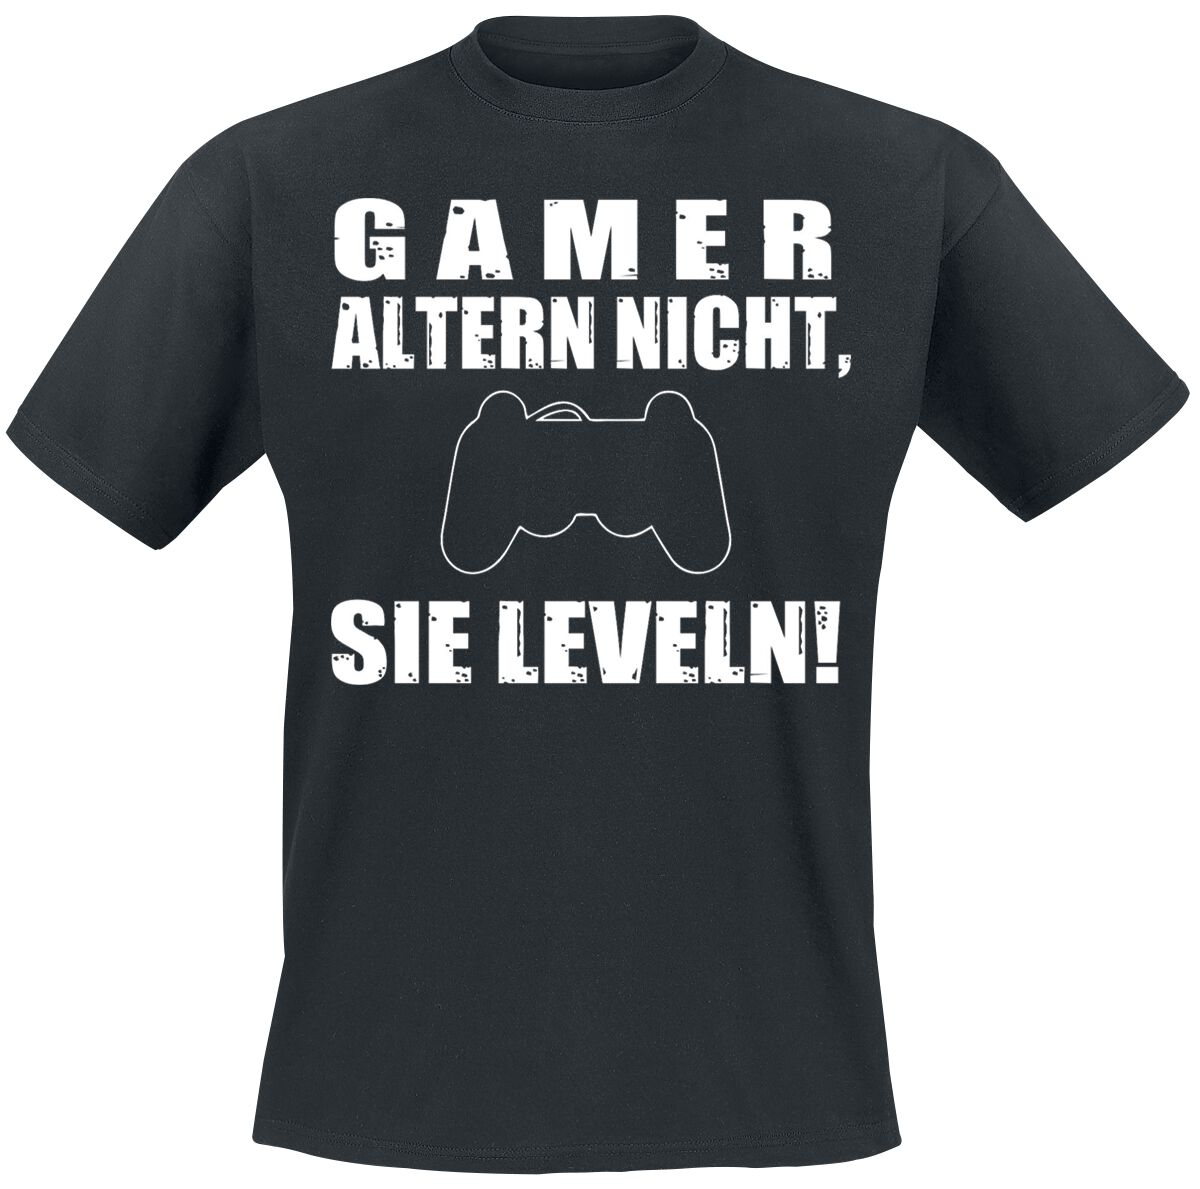 Sprüche - Gaming T-Shirt - Gamer altern nicht, sie leveln! - M bis 3XL - für Männer - Größe 3XL - schwarz  - EMP exklusives Merchandise!